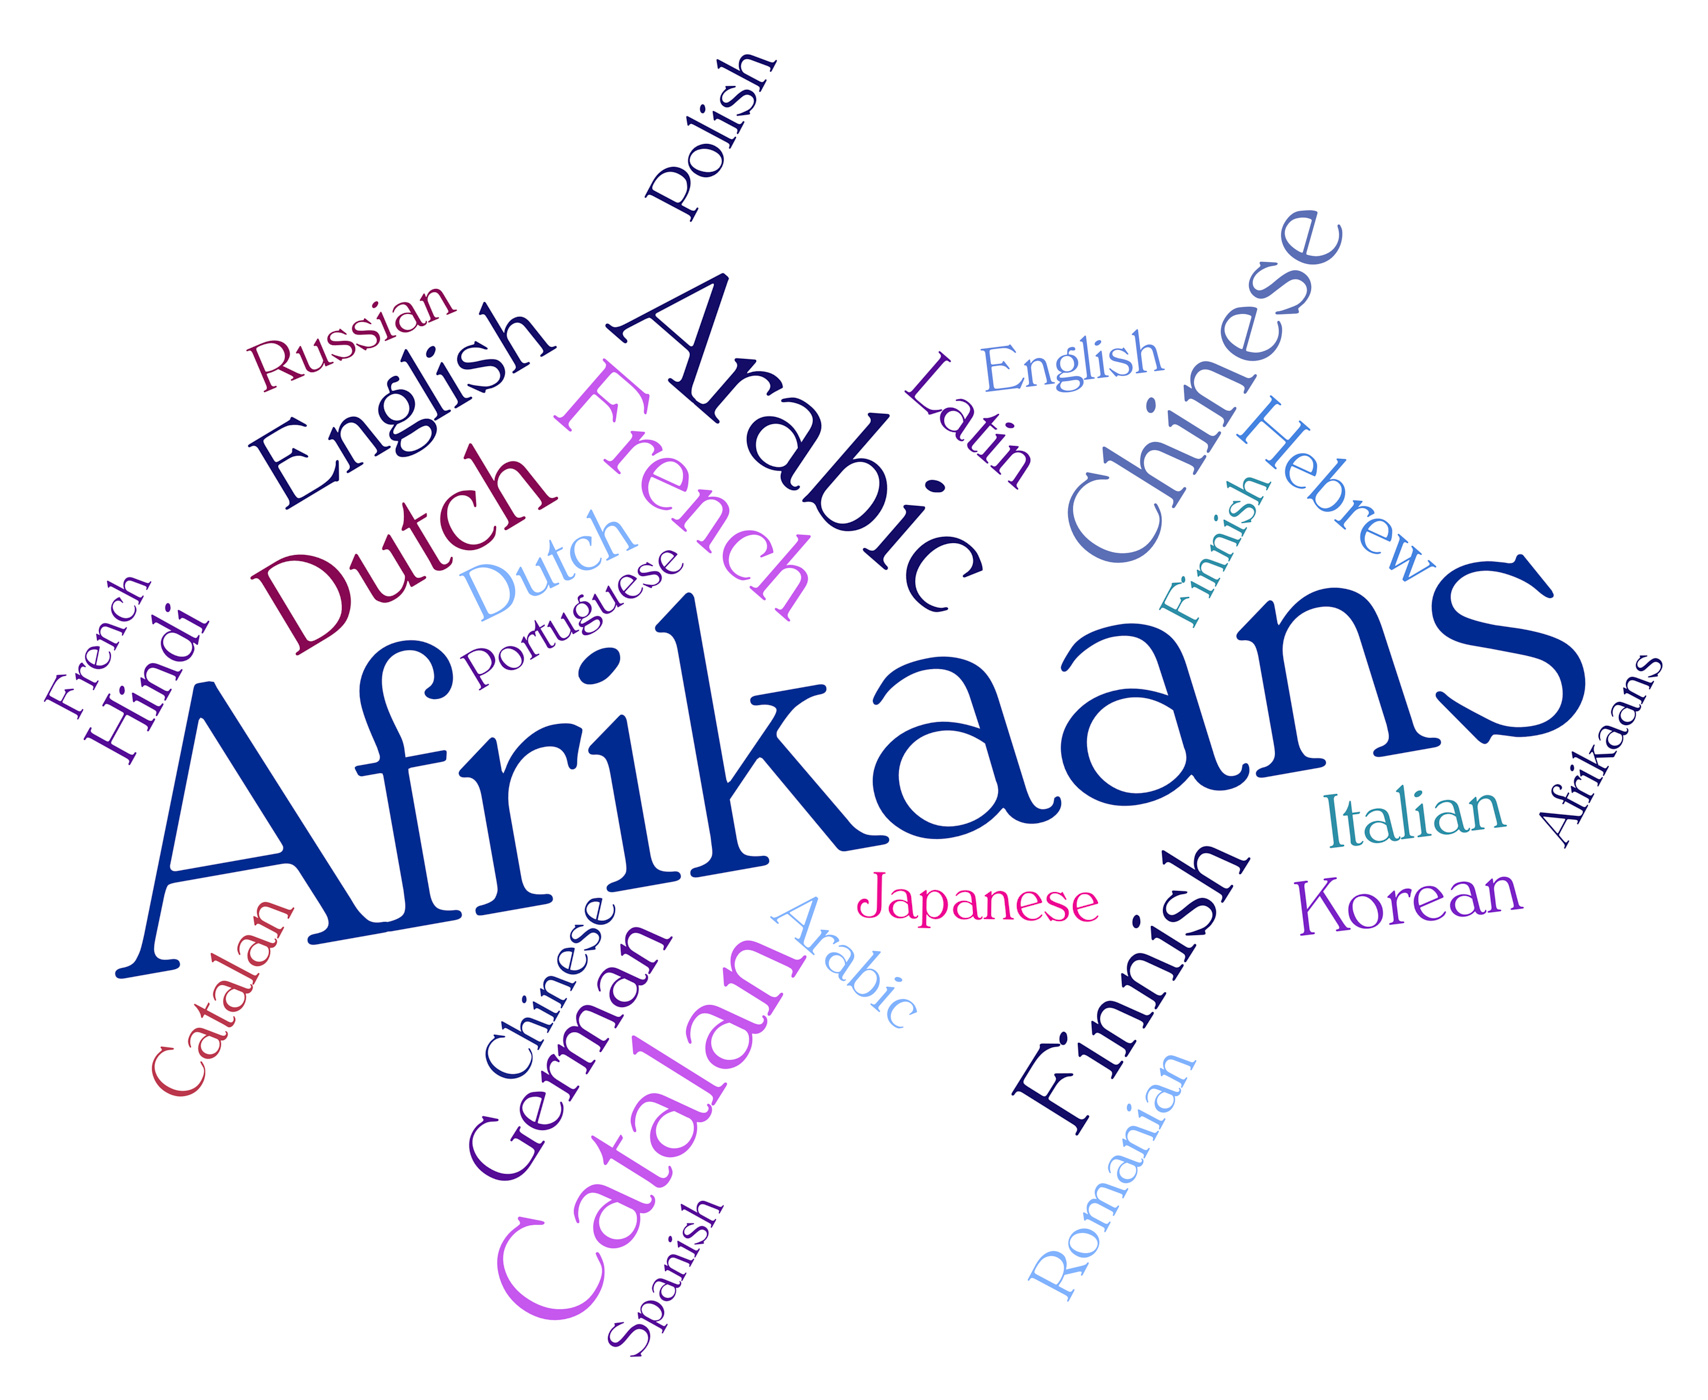 Afrikaans word indicates study language and lingo photo